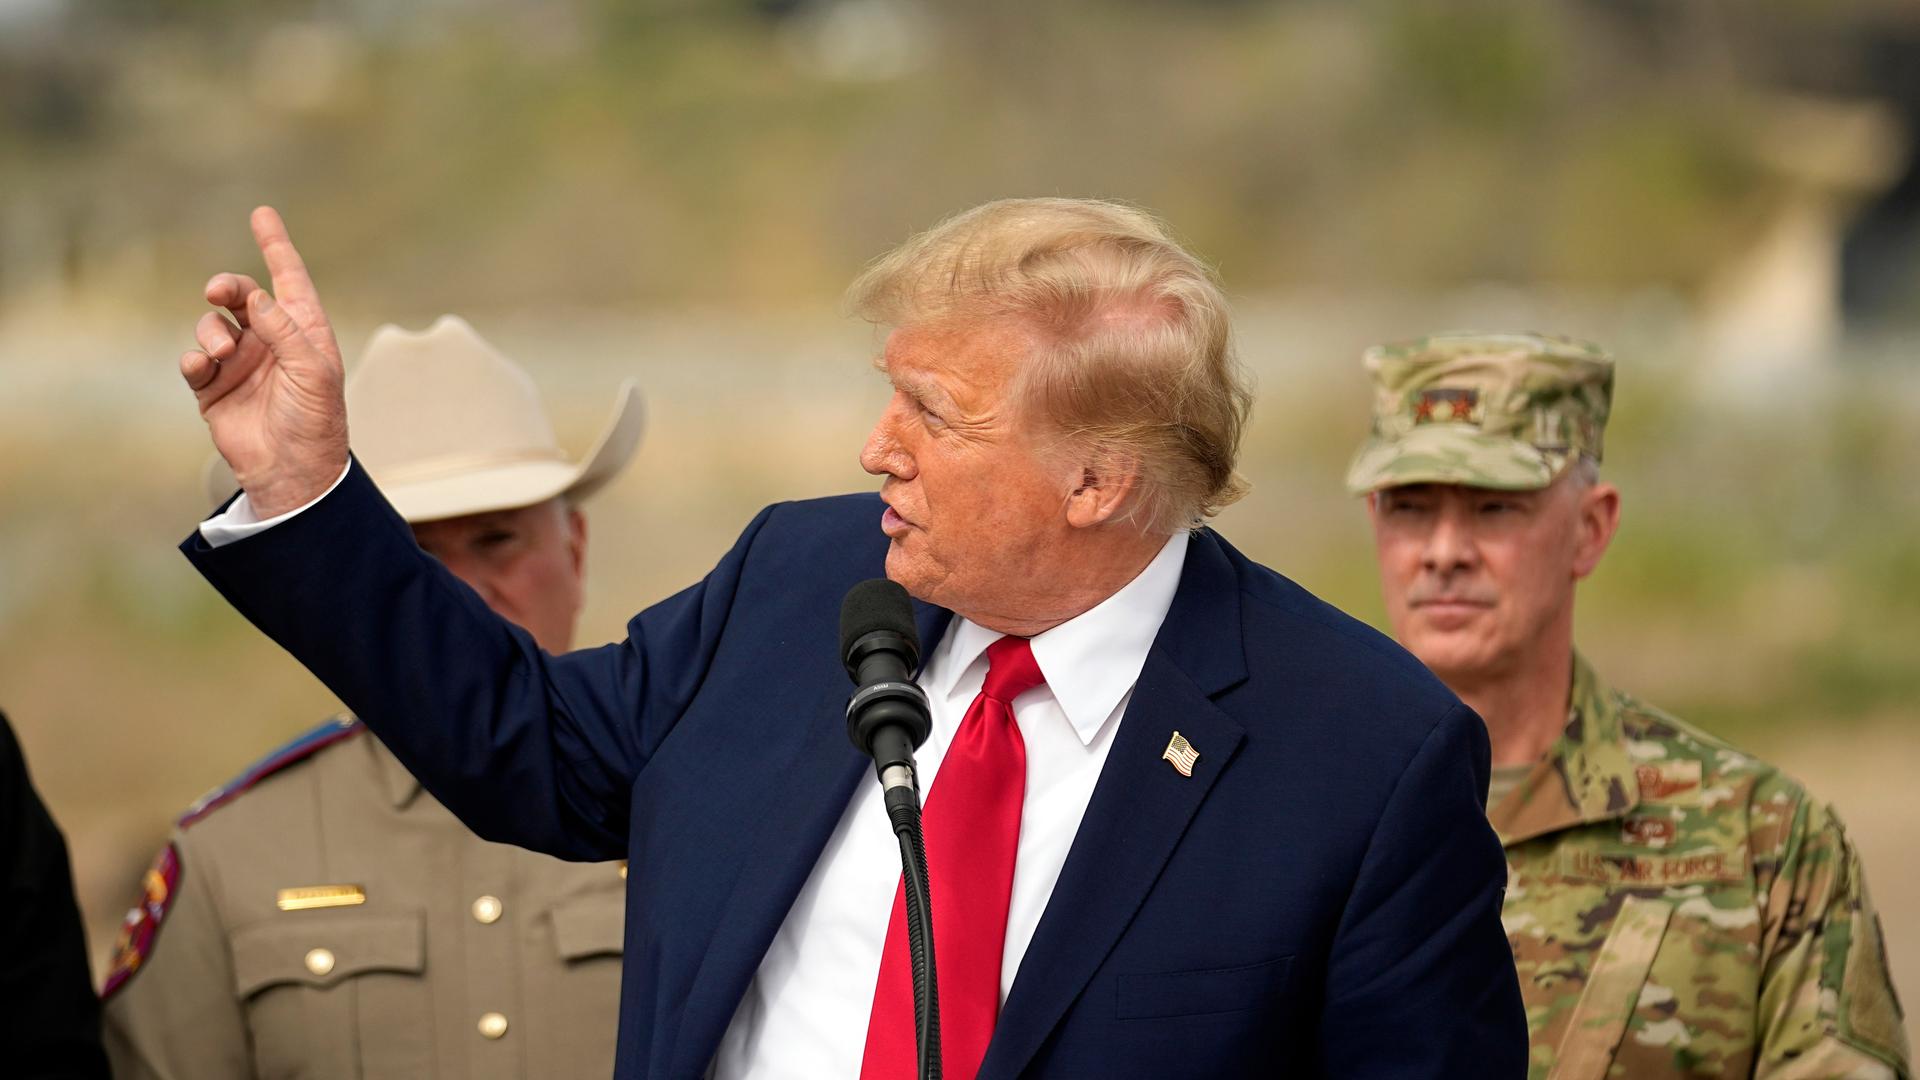 Donald Trump steht an einem Mikrofon und hälte eine Rede. Er hält die rechte Hand erhoben. Hinter ihm stehen ein Soldat und ein Sherrif.